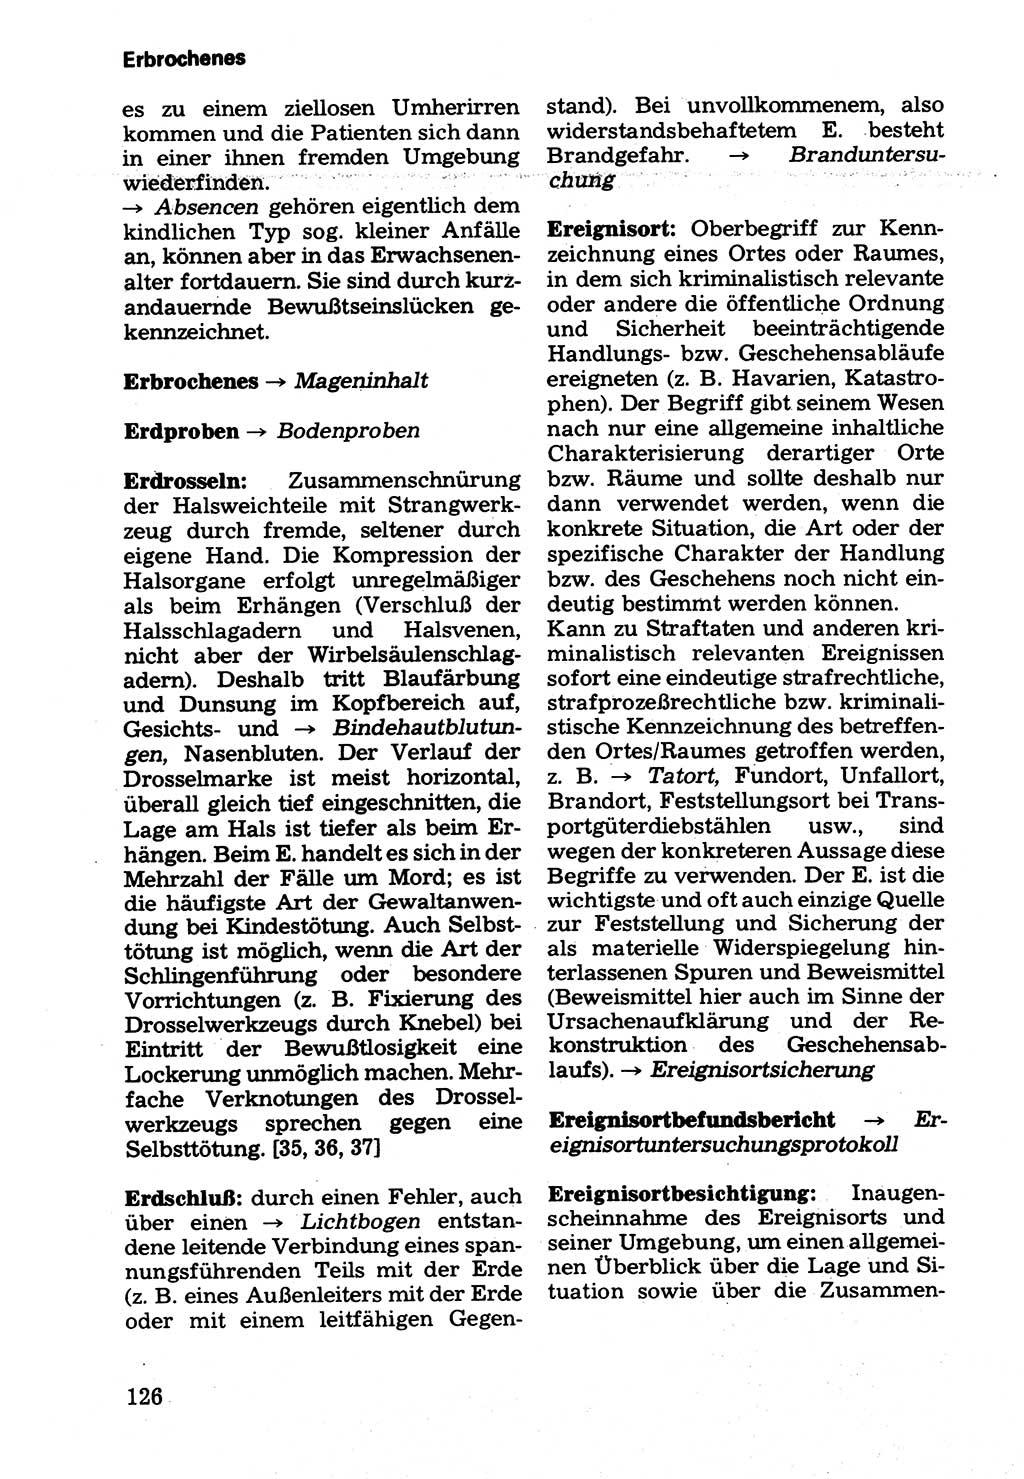 Wörterbuch der sozialistischen Kriminalistik [Deutsche Demokratische Republik (DDR)] 1981, Seite 126 (Wb. soz. Krim. DDR 1981, S. 126)